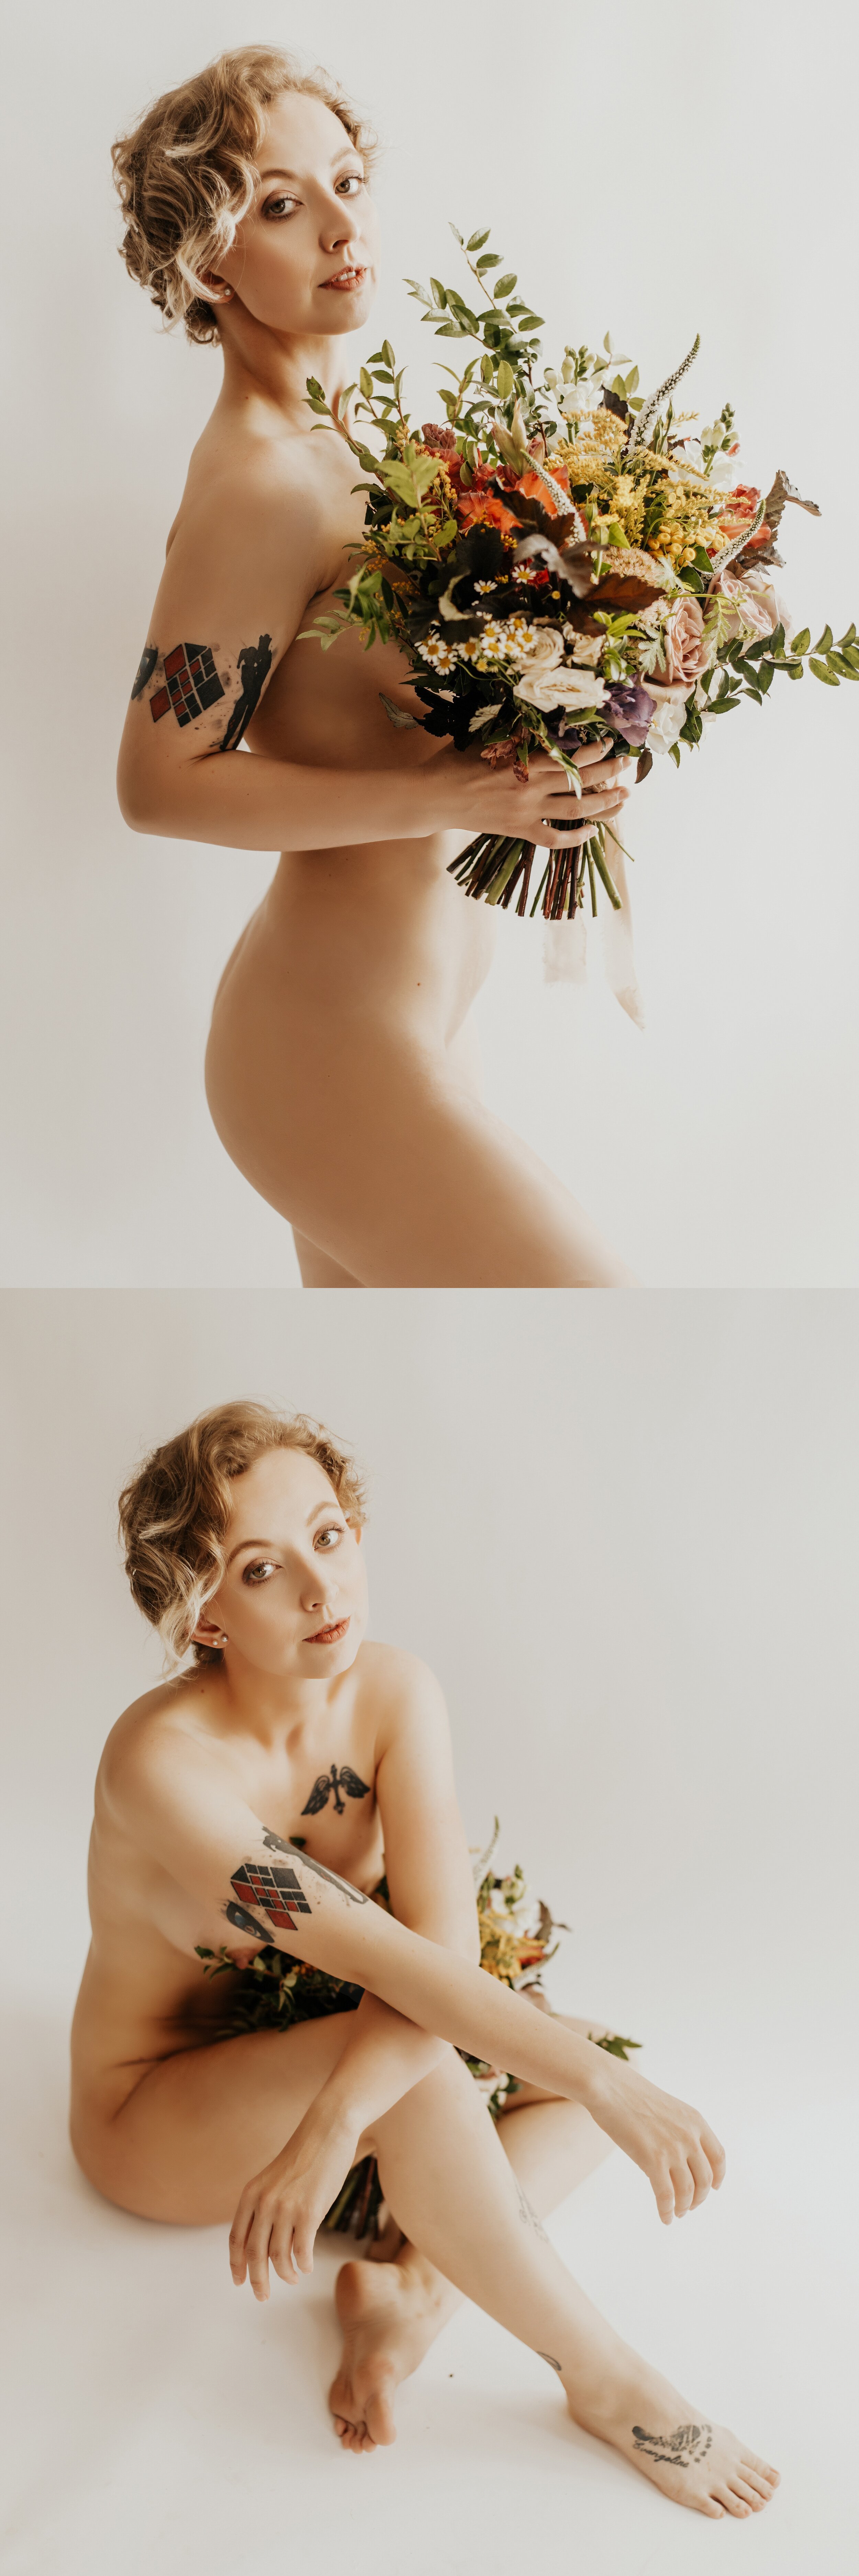 Kansas+City+Boudoir+Photography+Kansas+City+Portrait+Photography+_+Flower+Boudoir+_+Nude+Boudoir.jpeg